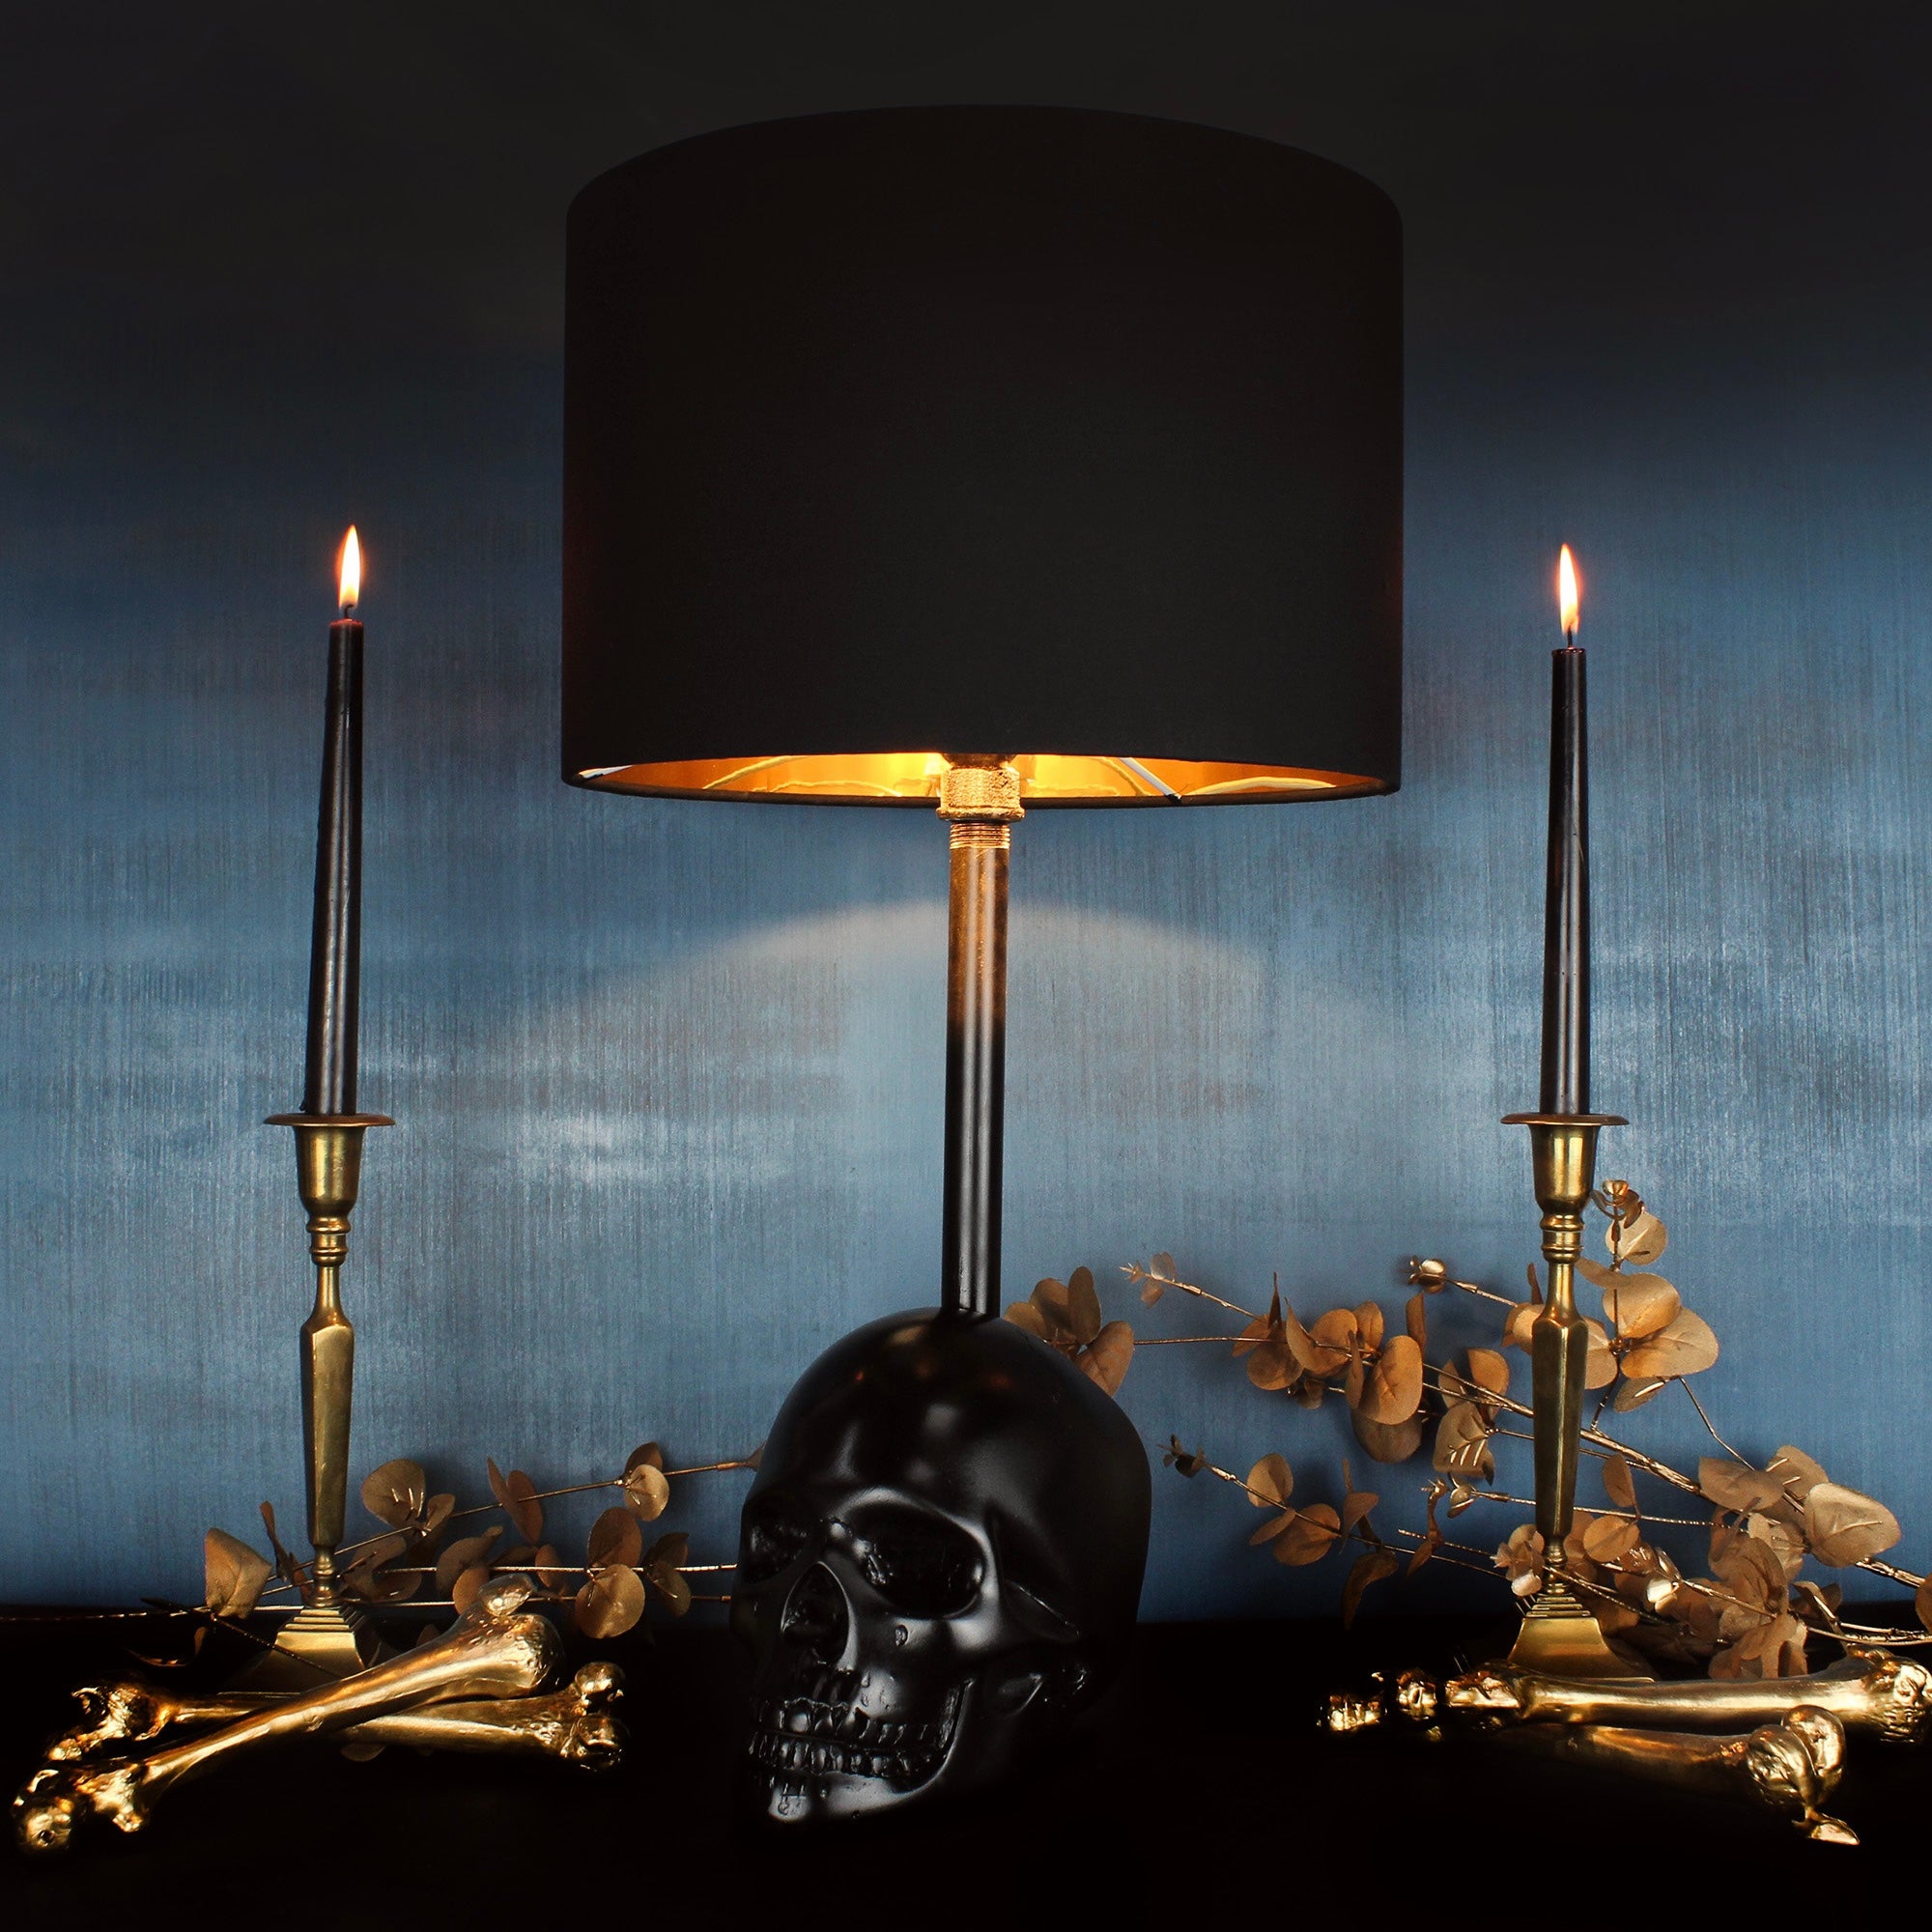 The Edison Skull Lamp - The Blackened Teeth